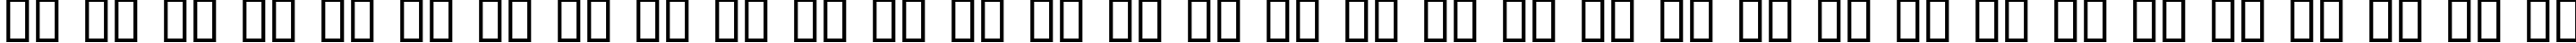 Пример написания русского алфавита шрифтом Dobkin Script